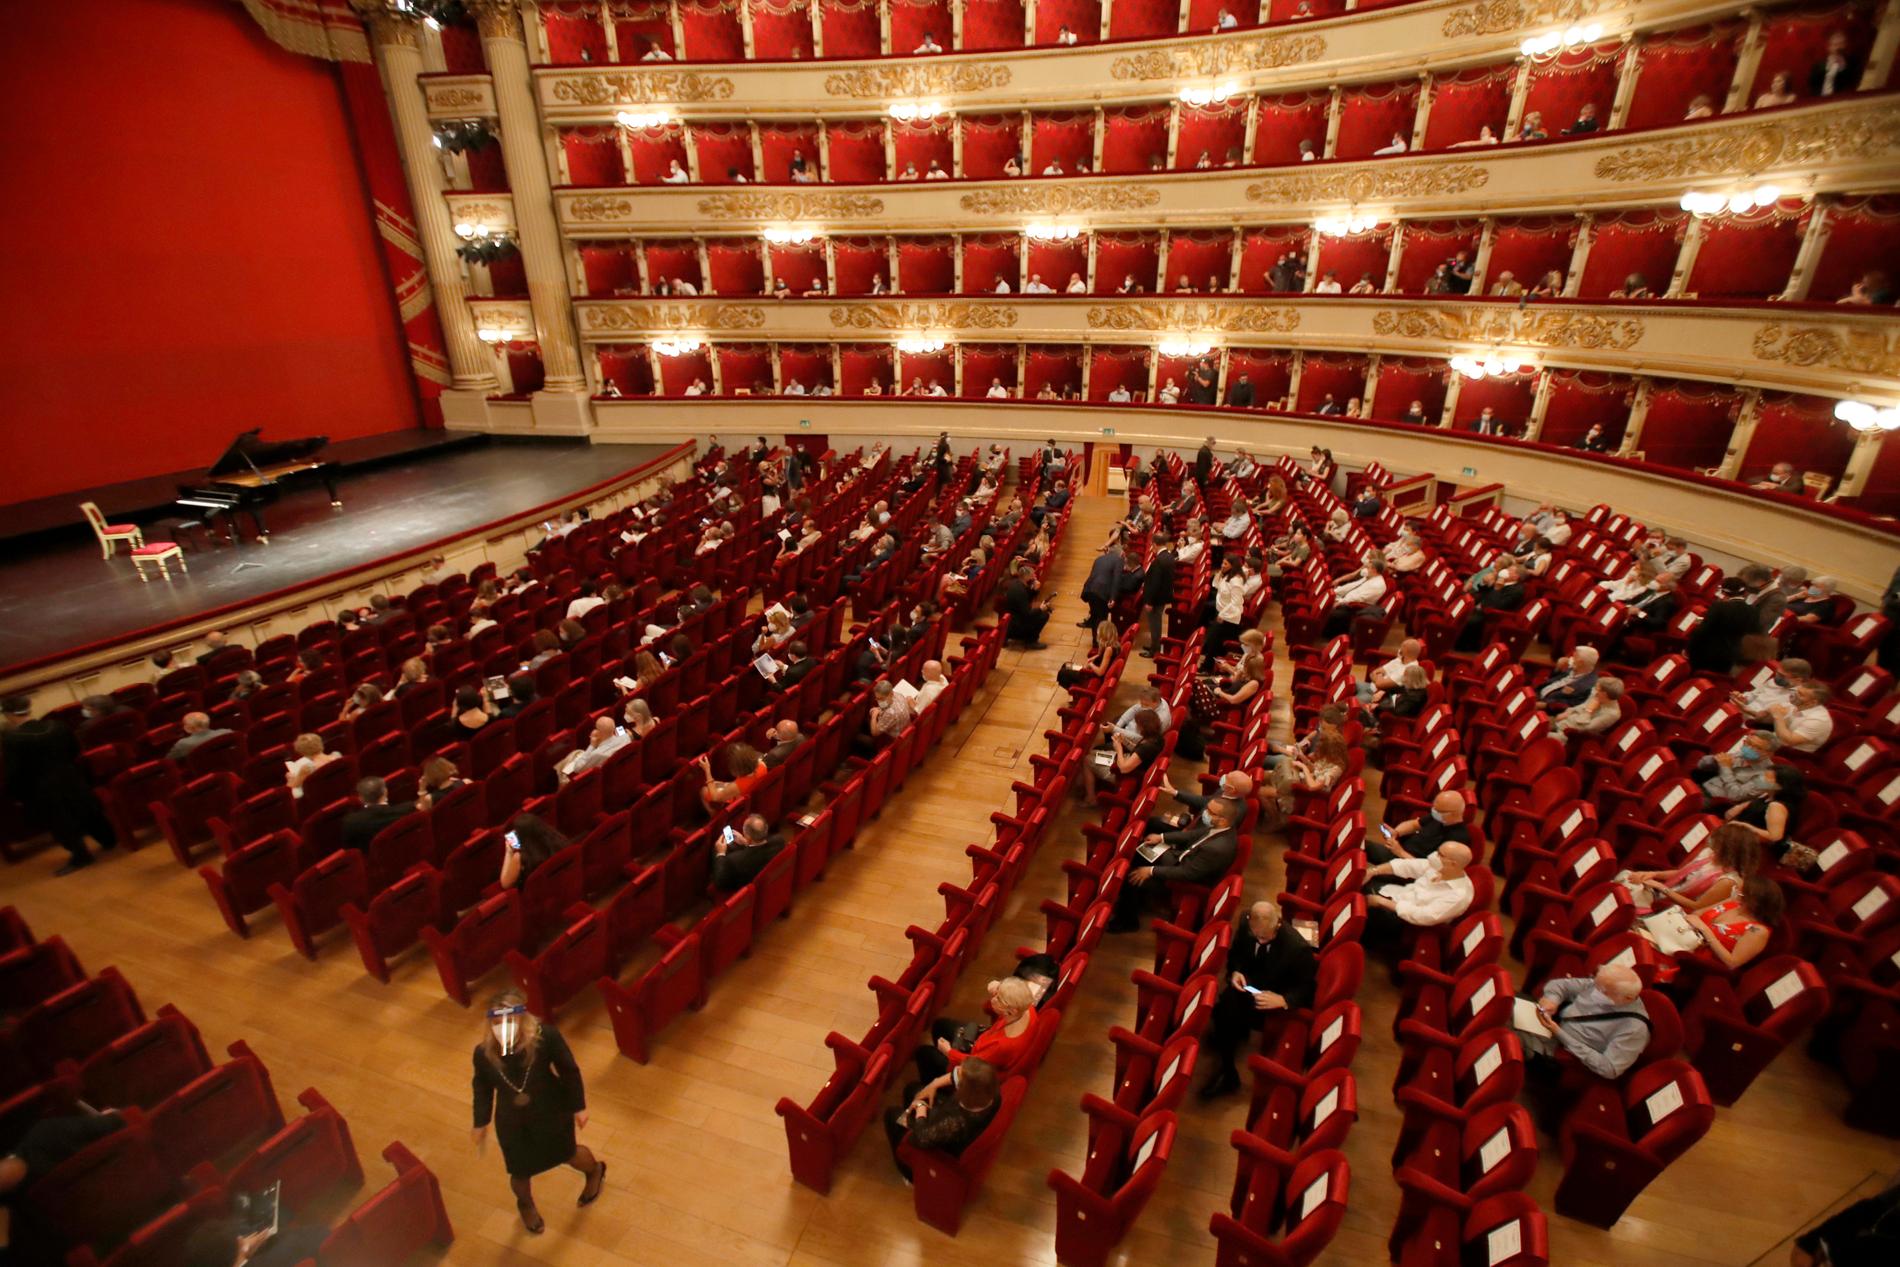 La Scala öppnade igen i juli efter att ha varit stängt i fyra månader, då med restriktioner och avstånd mellan besökarna. Arkivbild.